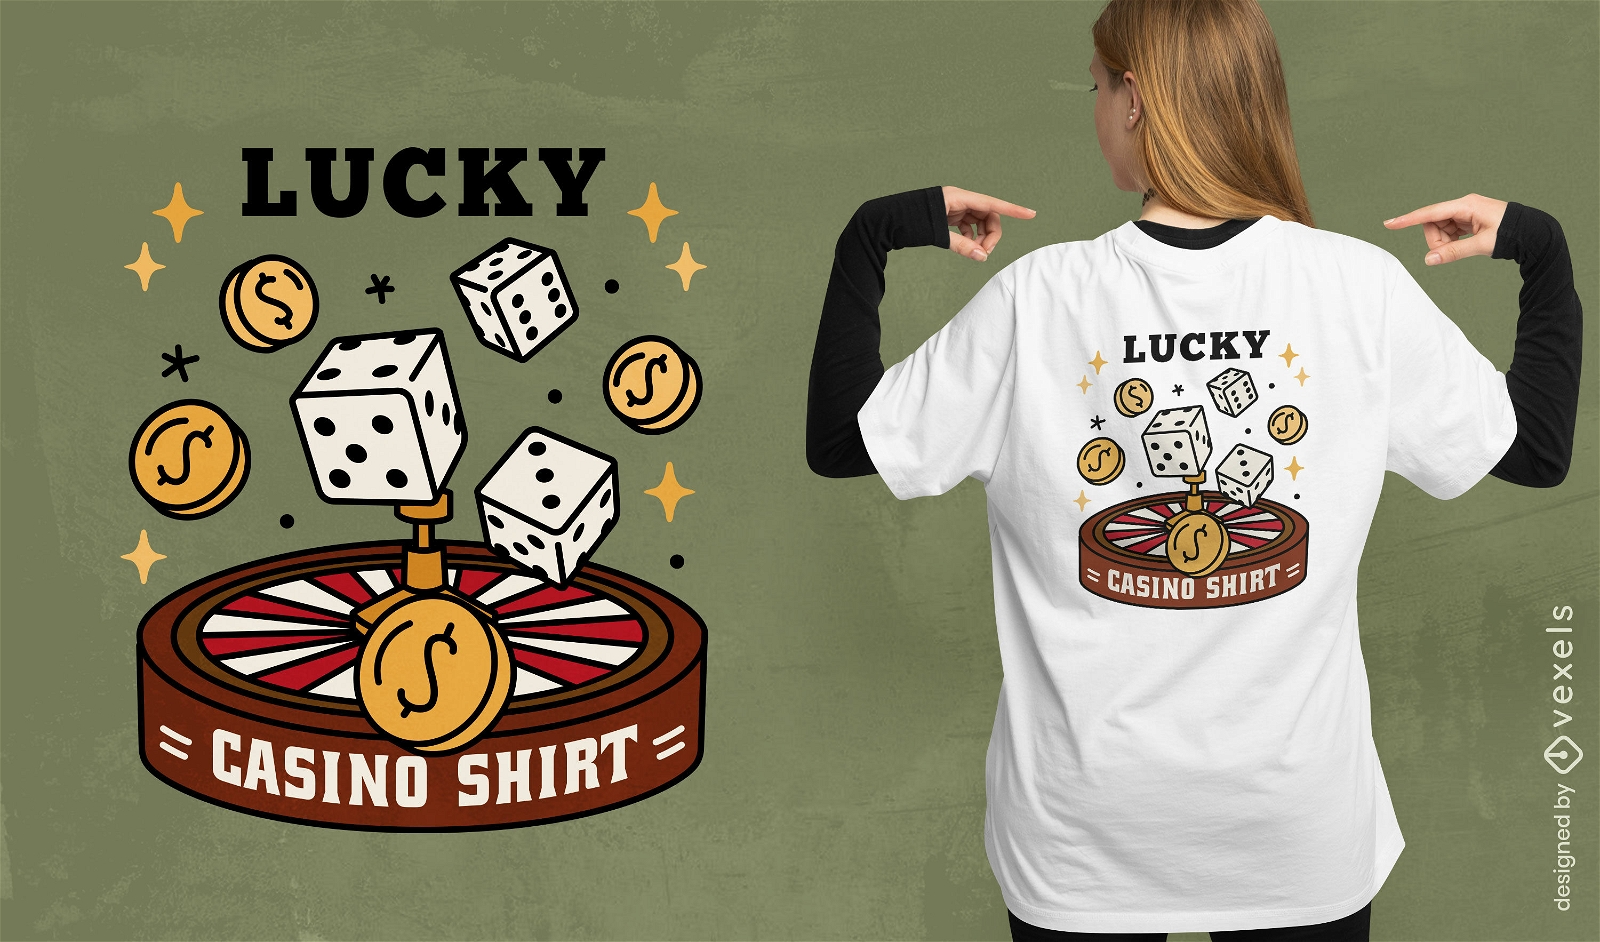 Lucky casino shirt t-shirt design